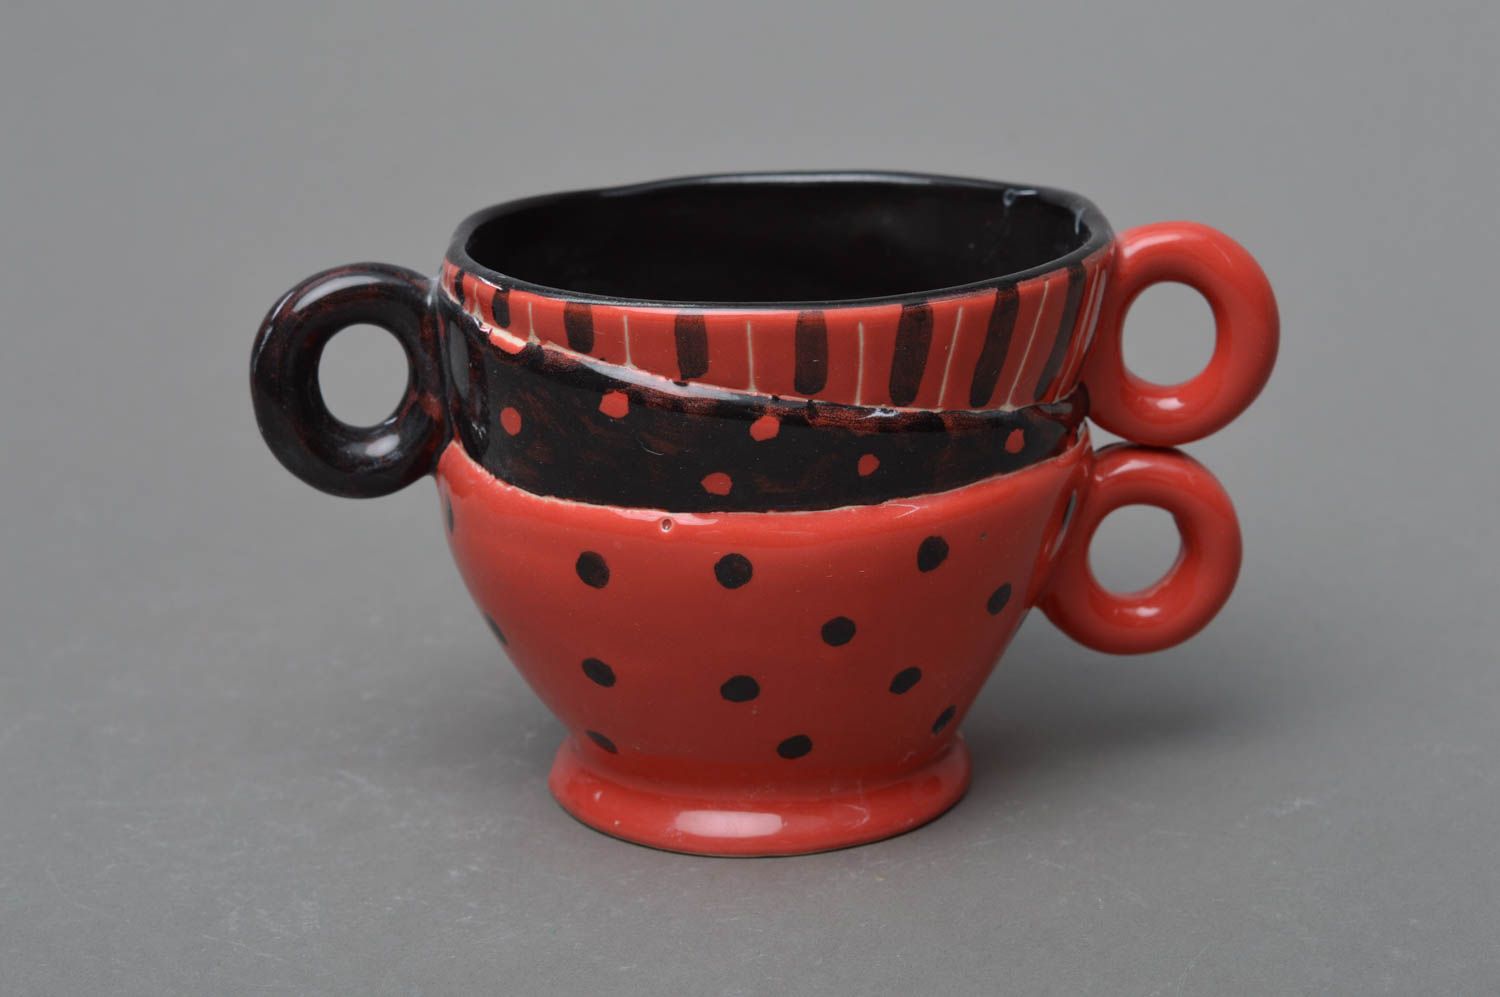 Schöne kreative handmade Tasse aus Porzellan ungewöhnlicher Form rot schwarz foto 1